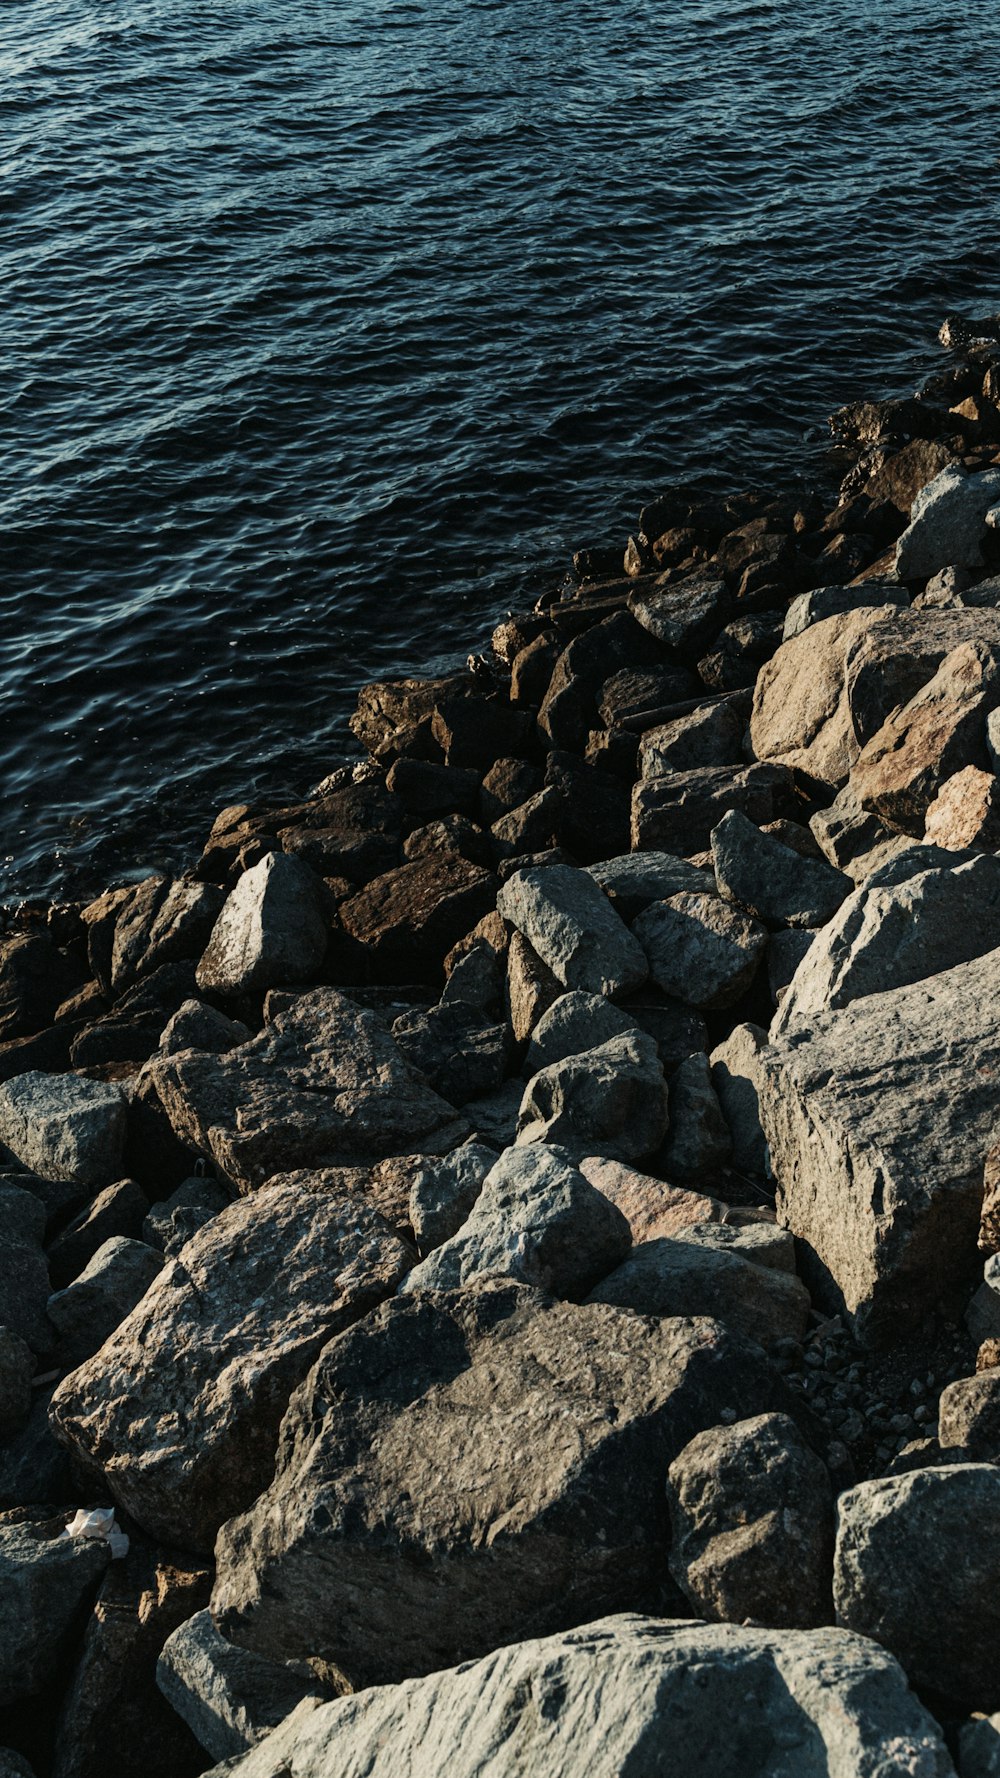 Un pájaro está sentado en las rocas junto al agua